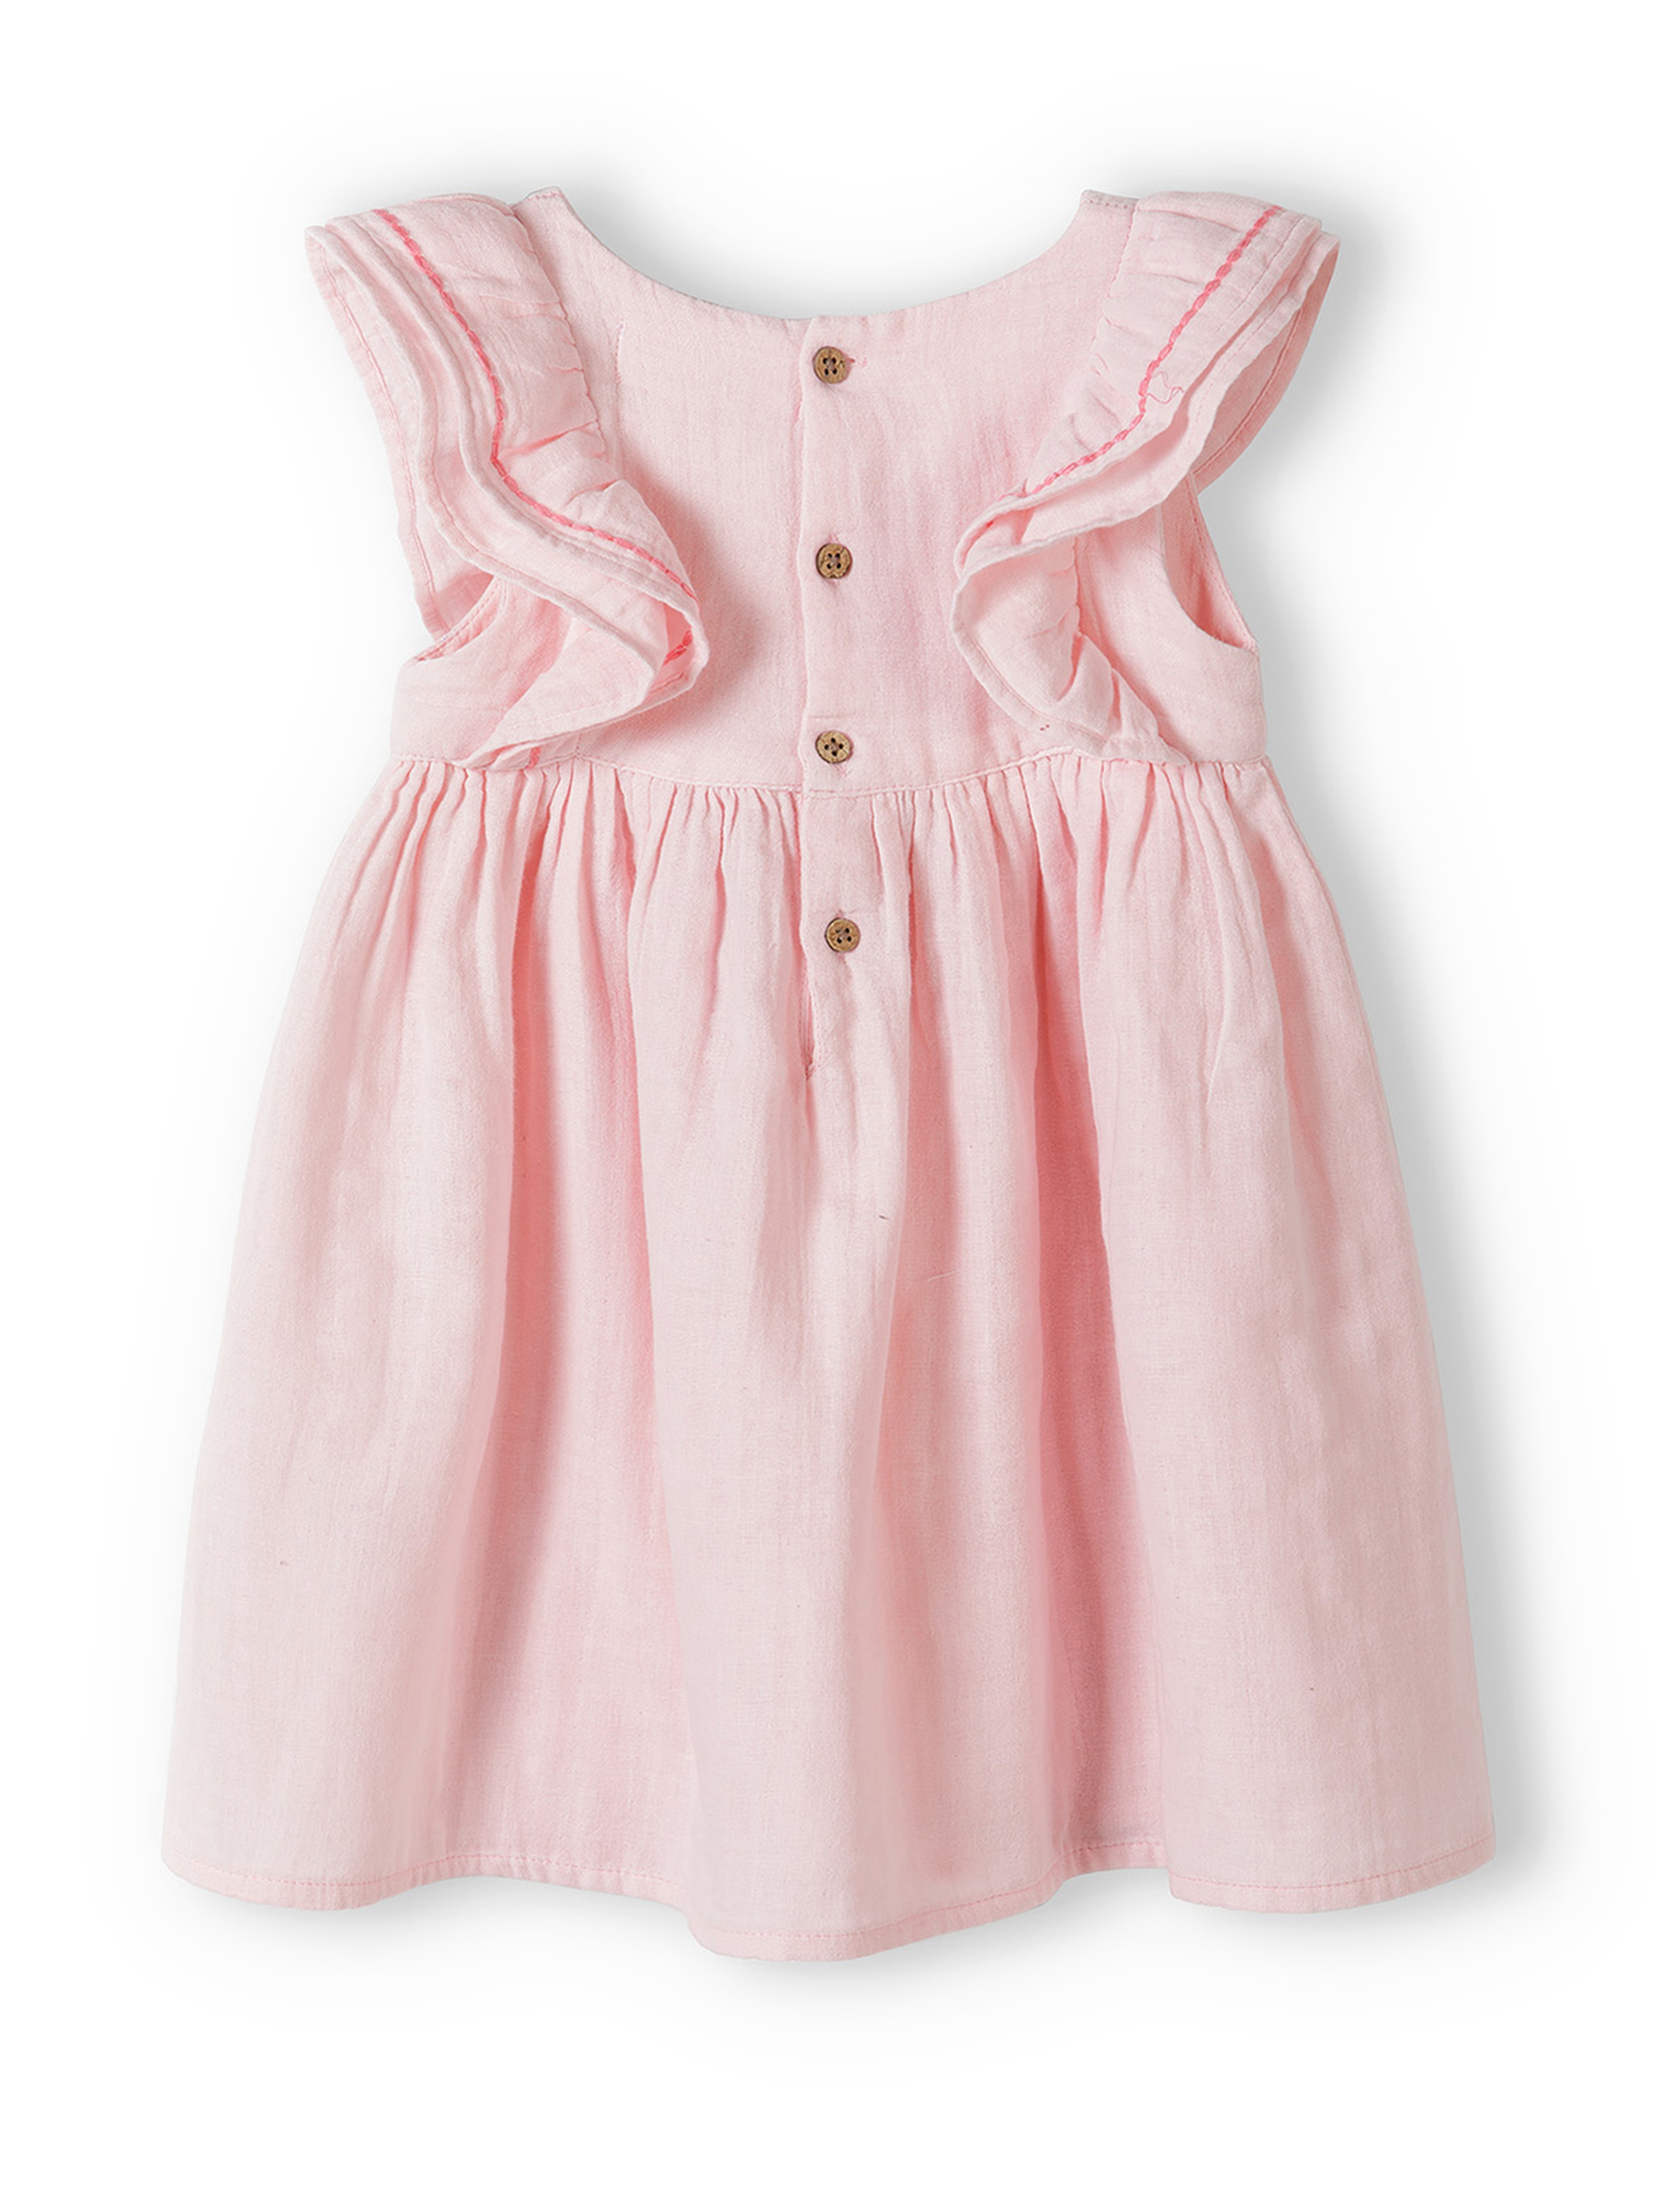 Różowa sukienka niemowlęca bawełniana z krótkim rękawem